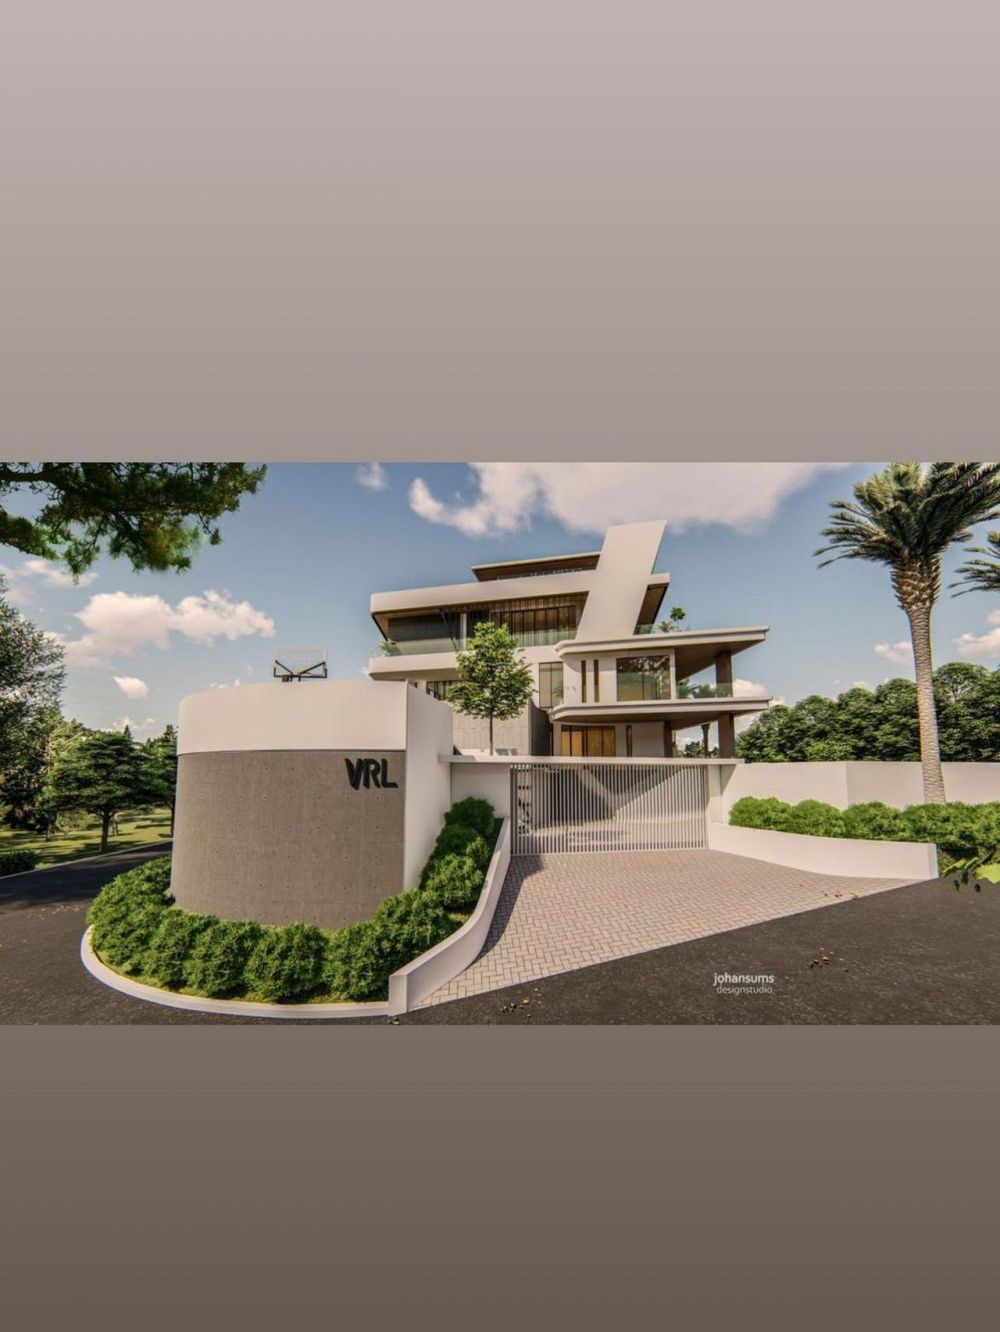 Potret desain bangunan rumah 7 seleb ini megah, terbaru Ayu Ting Ting